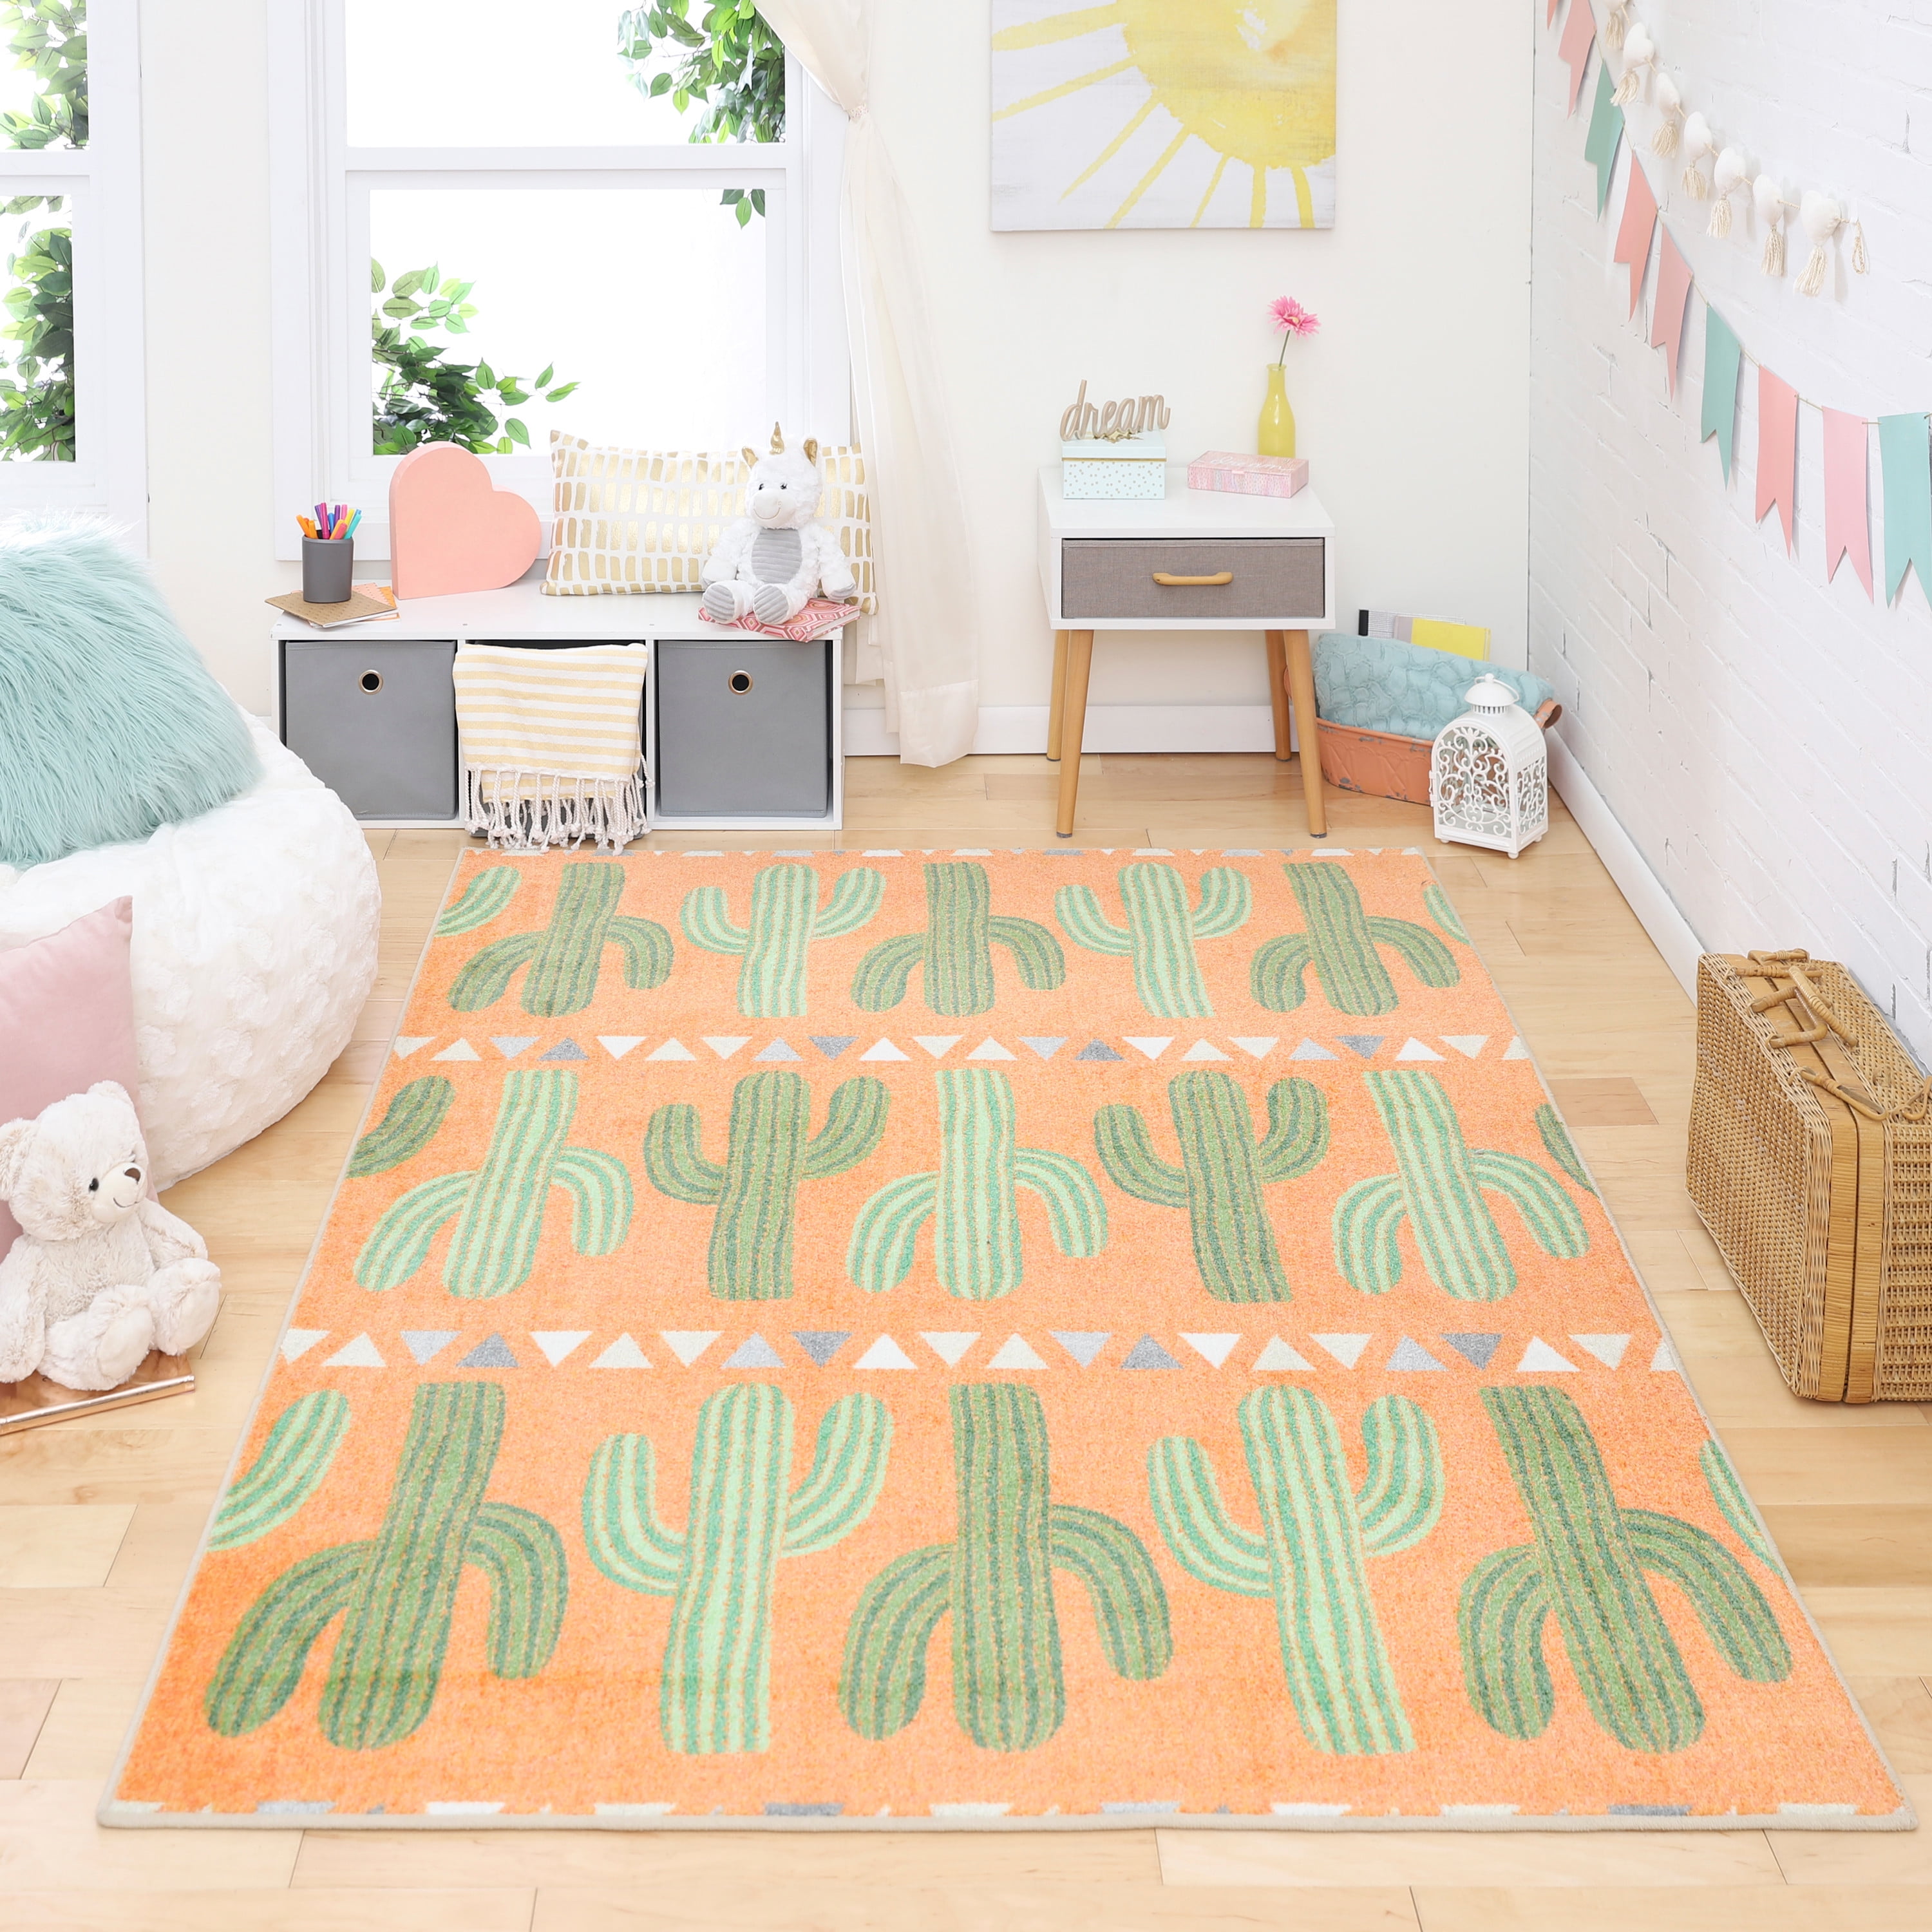 Desert Cactus Flower Home Bedroom Decor Carpet Non Slip Room Floor Rug Yoga Mat